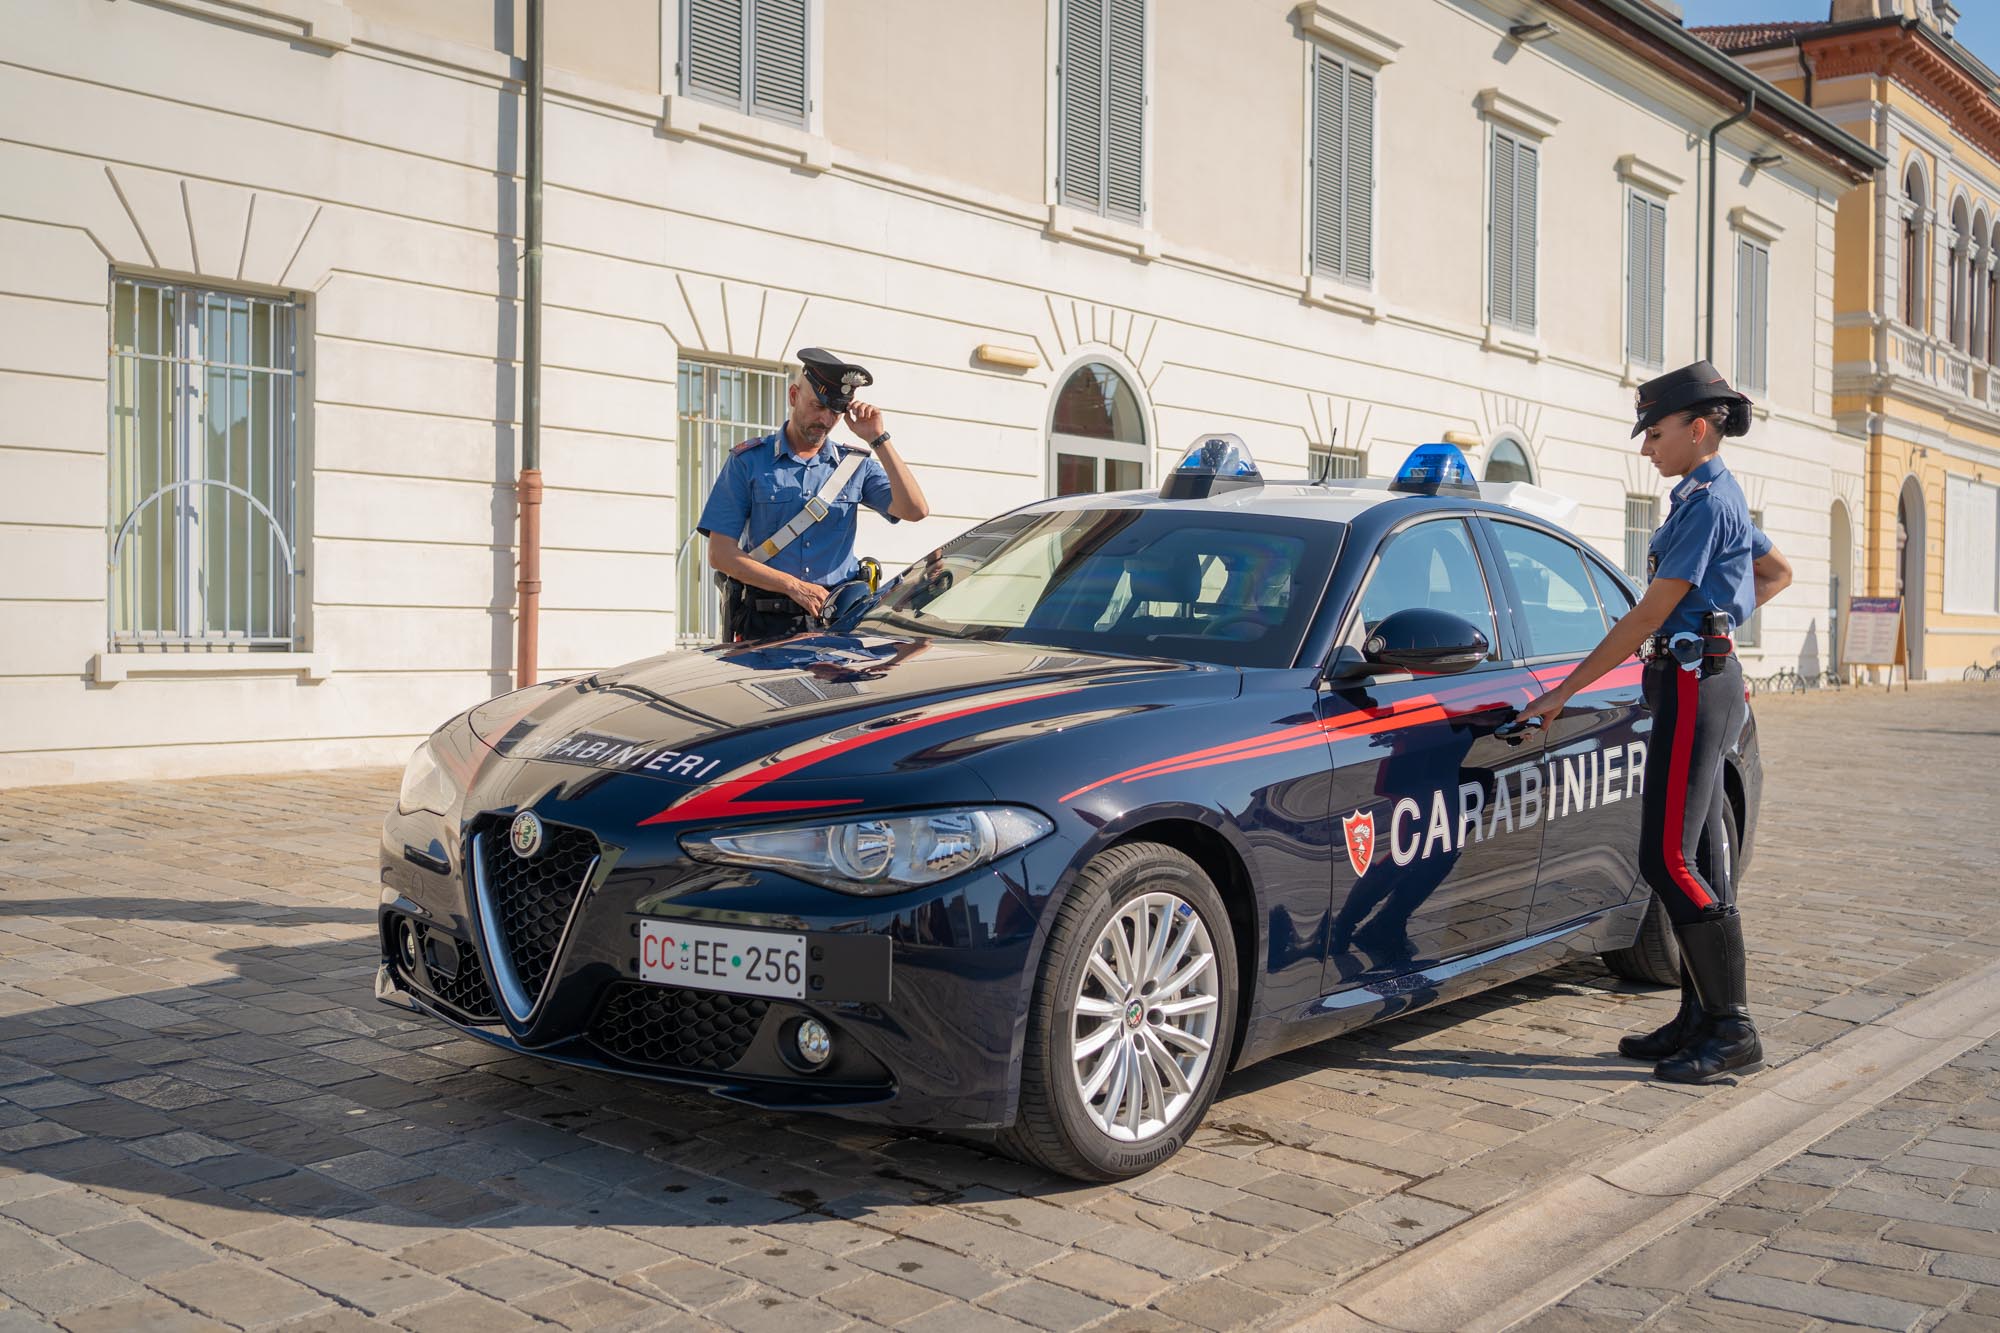 Nasconde la droga negli slip e aggredisce i carabinieri: due arresti